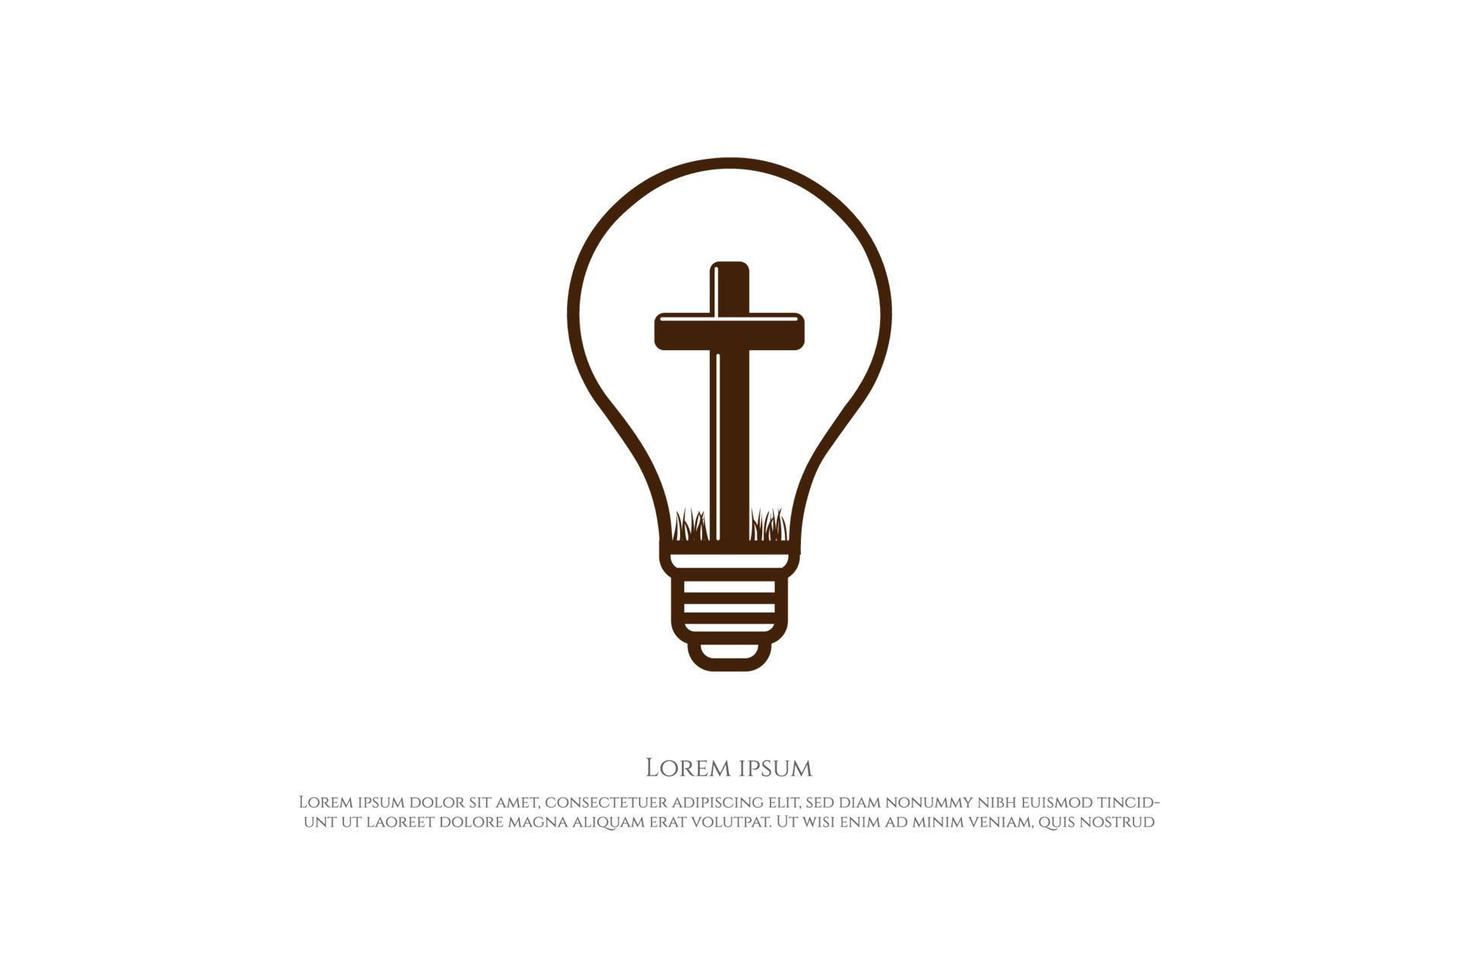 Light Bulb or Lamp with Jesus Christian Cross Logo Design Vector